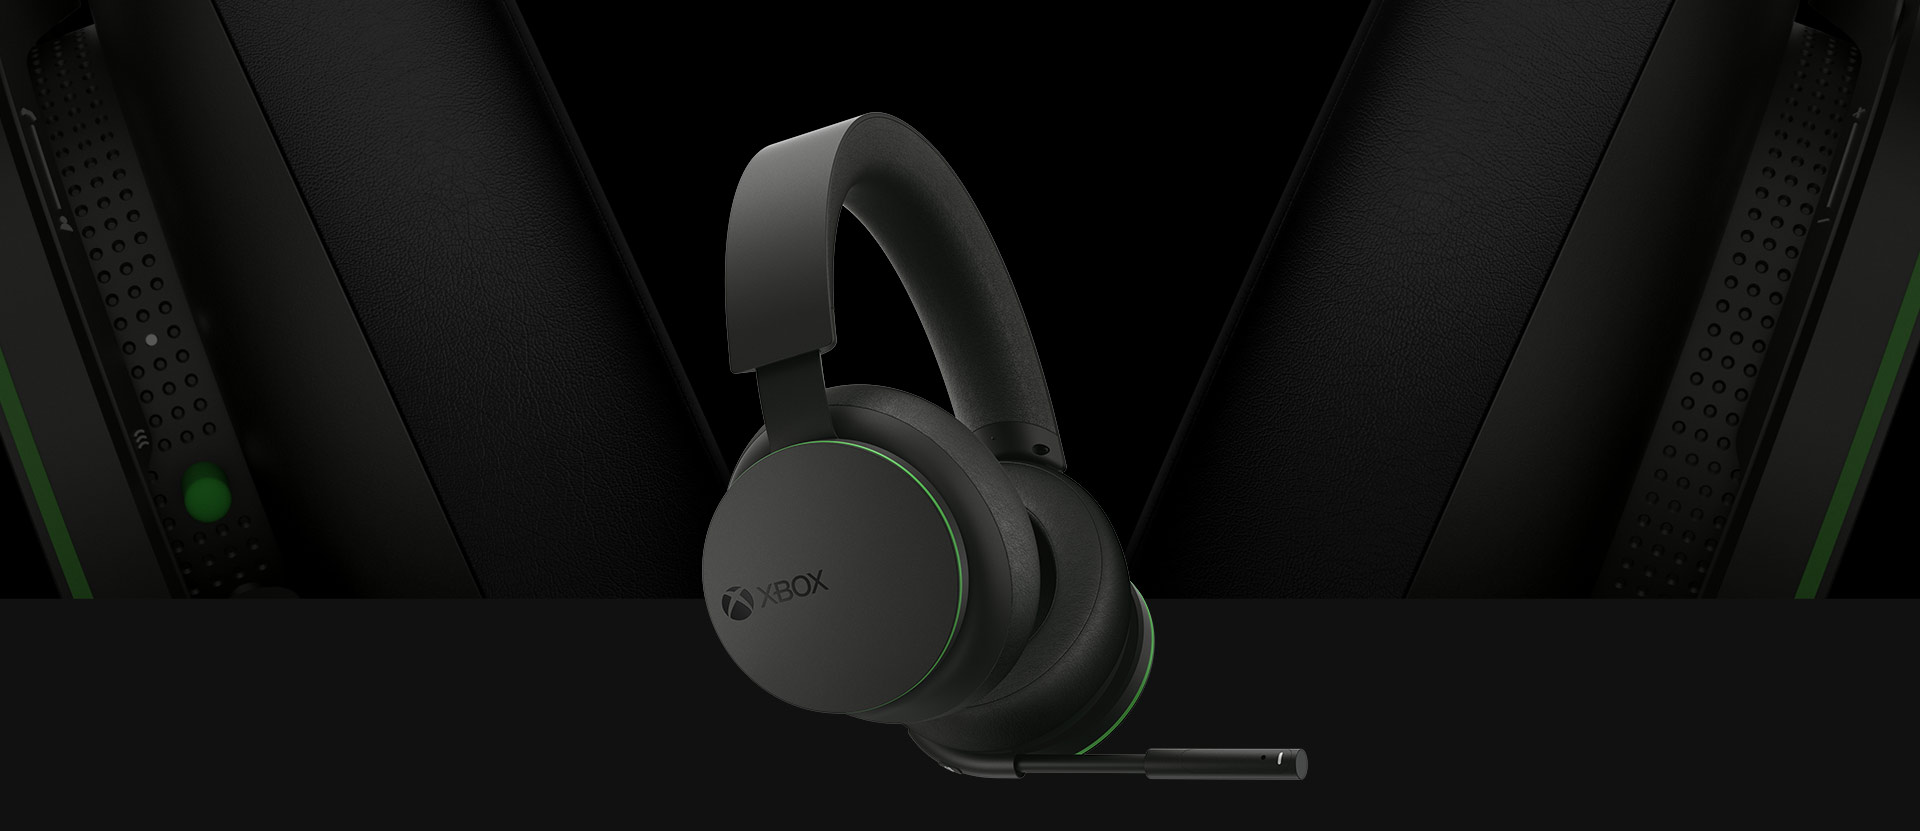 Misbruge Feasibility sej Xbox Wireless Headset | Xbox